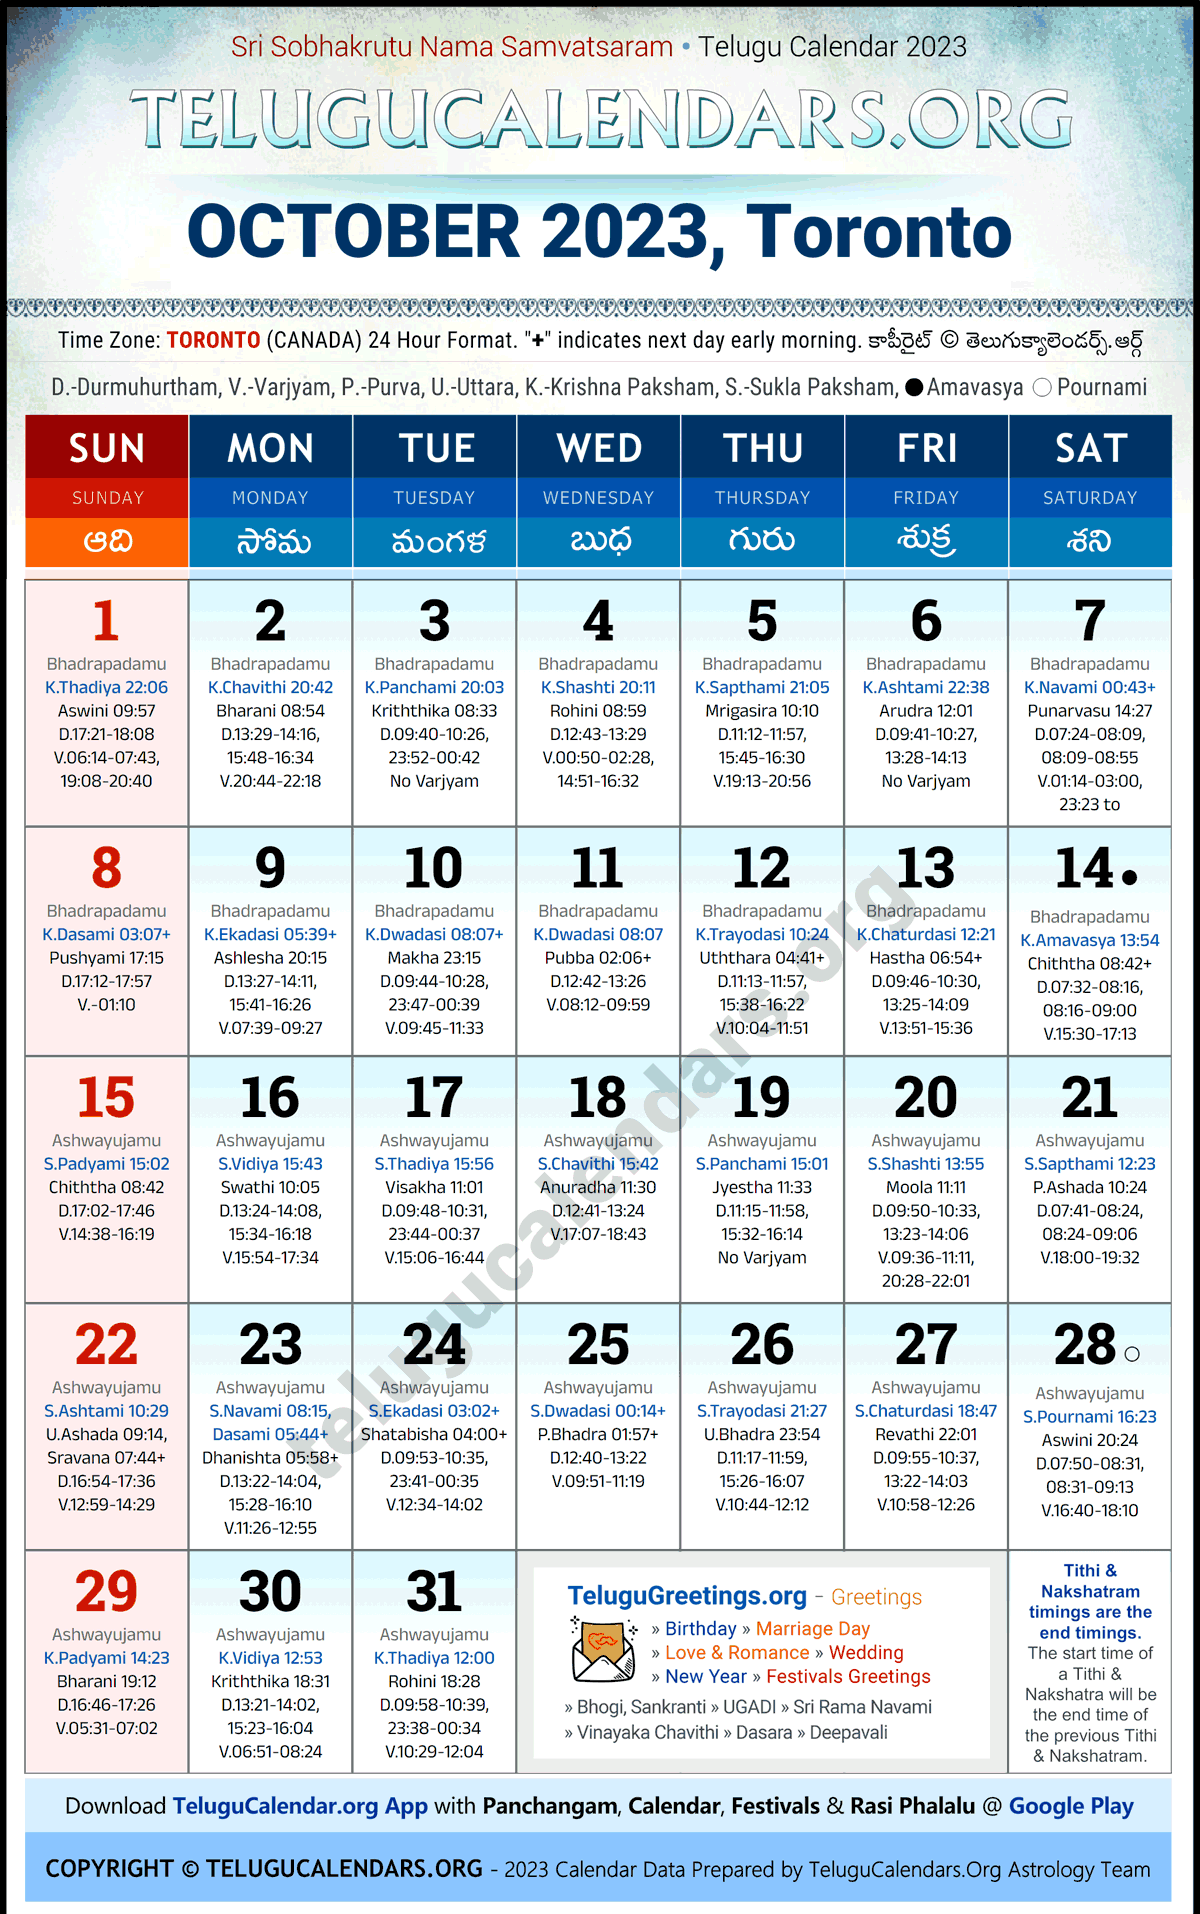 Telugu Calendar 2023 October Festivals for Toronto